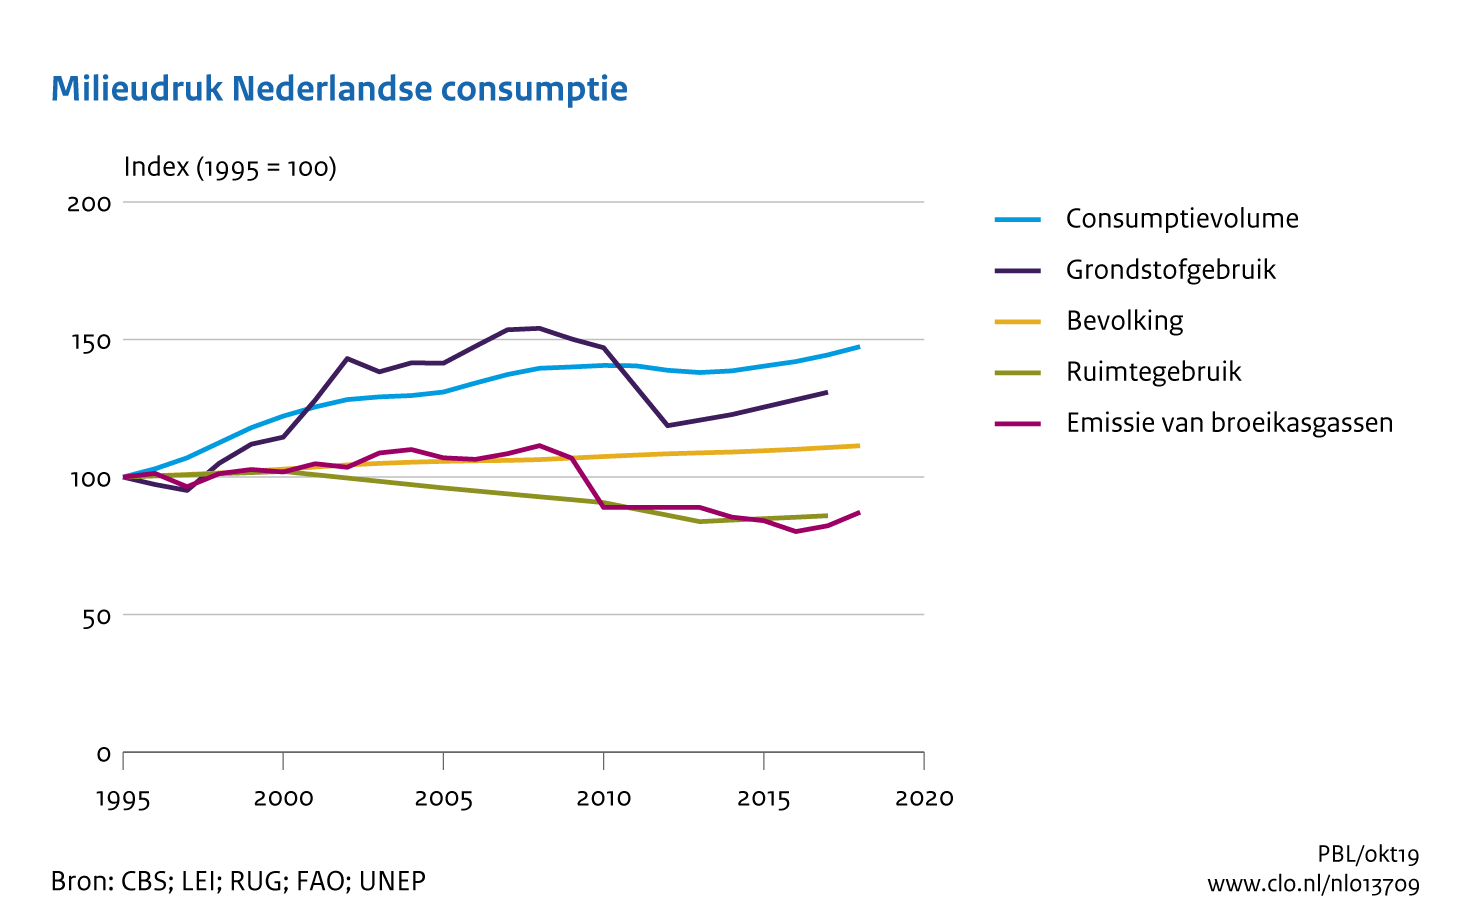 Figuur Index van consumptievolume, CO2-emissie, ruimtegebruik en bevolkingsgroei sinds 1995. In de rest van de tekst wordt deze figuur uitgebreider uitgelegd.